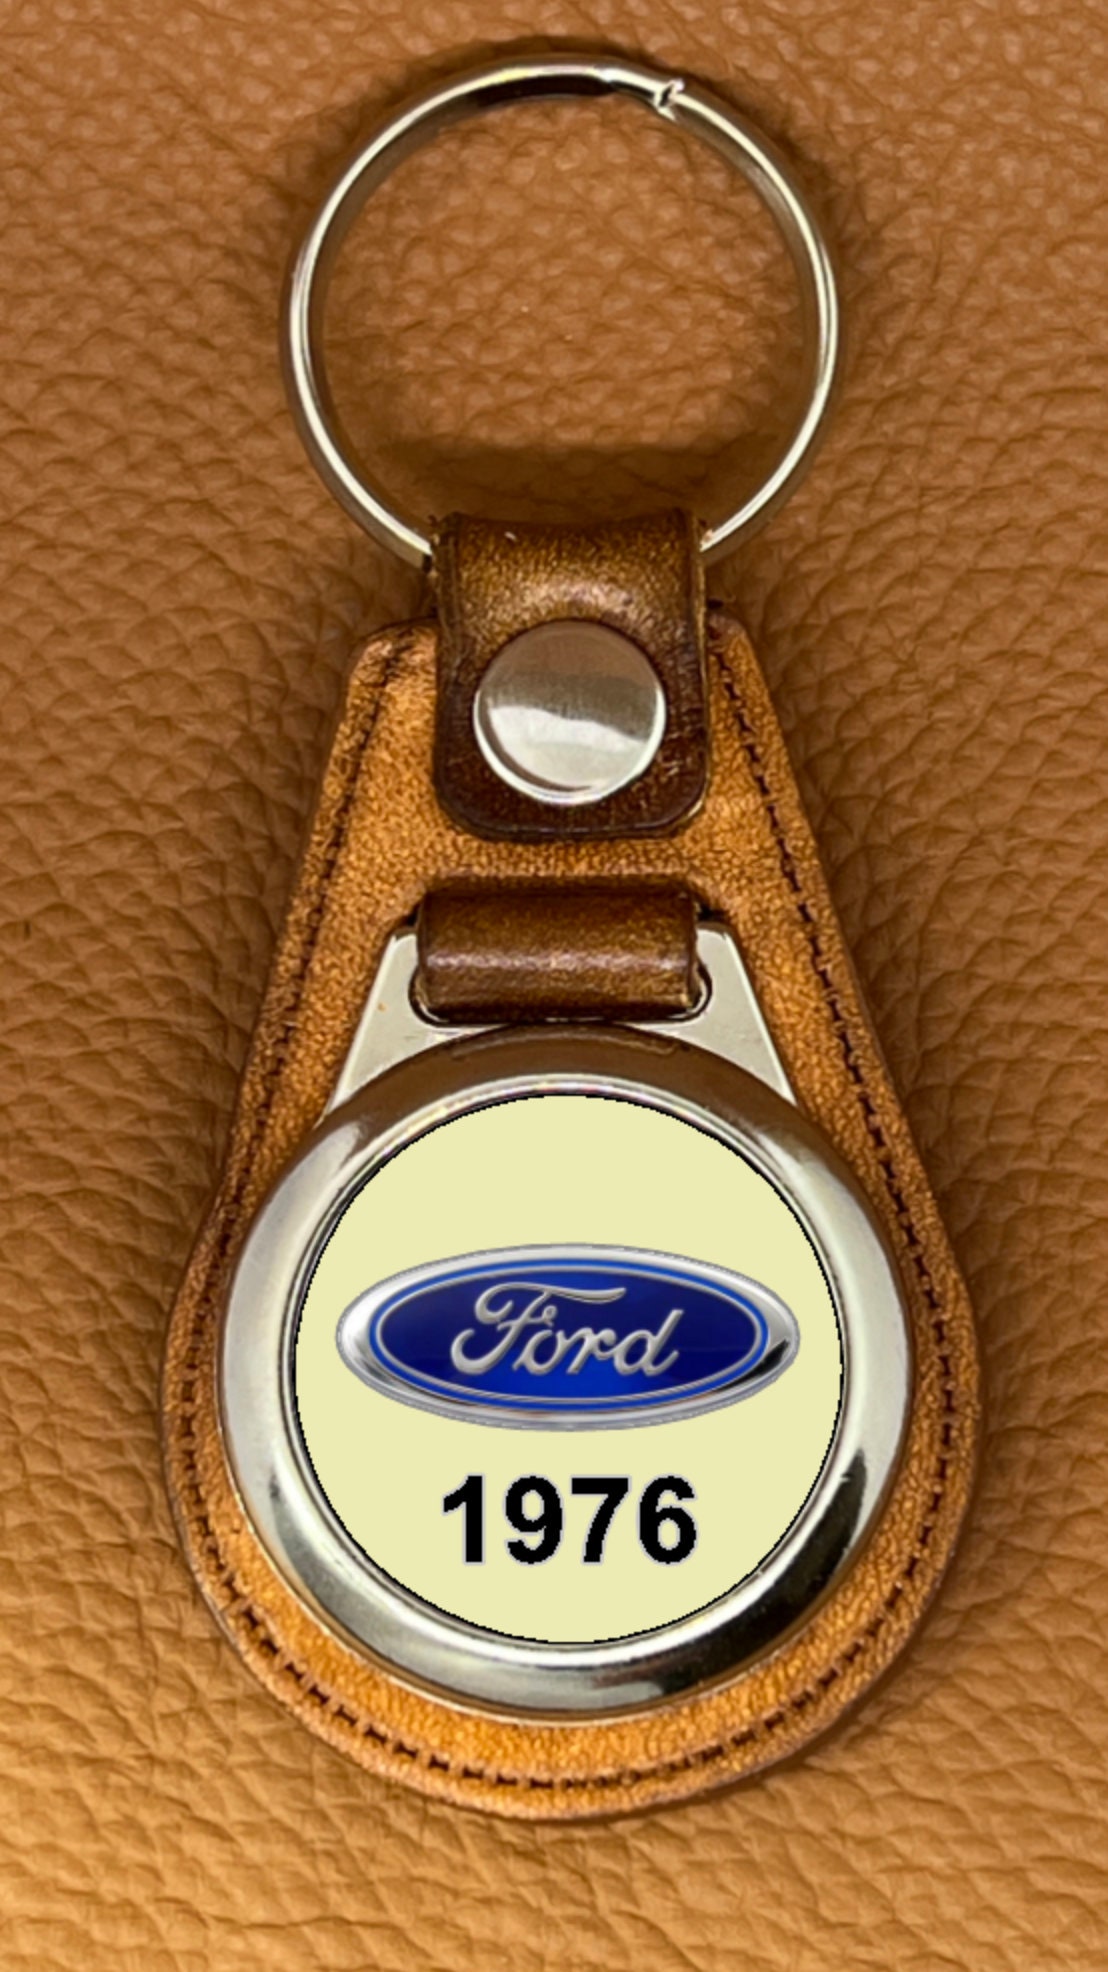 1976 Schlüsselanhänger aus Leder für deinen Ford Truck - .de